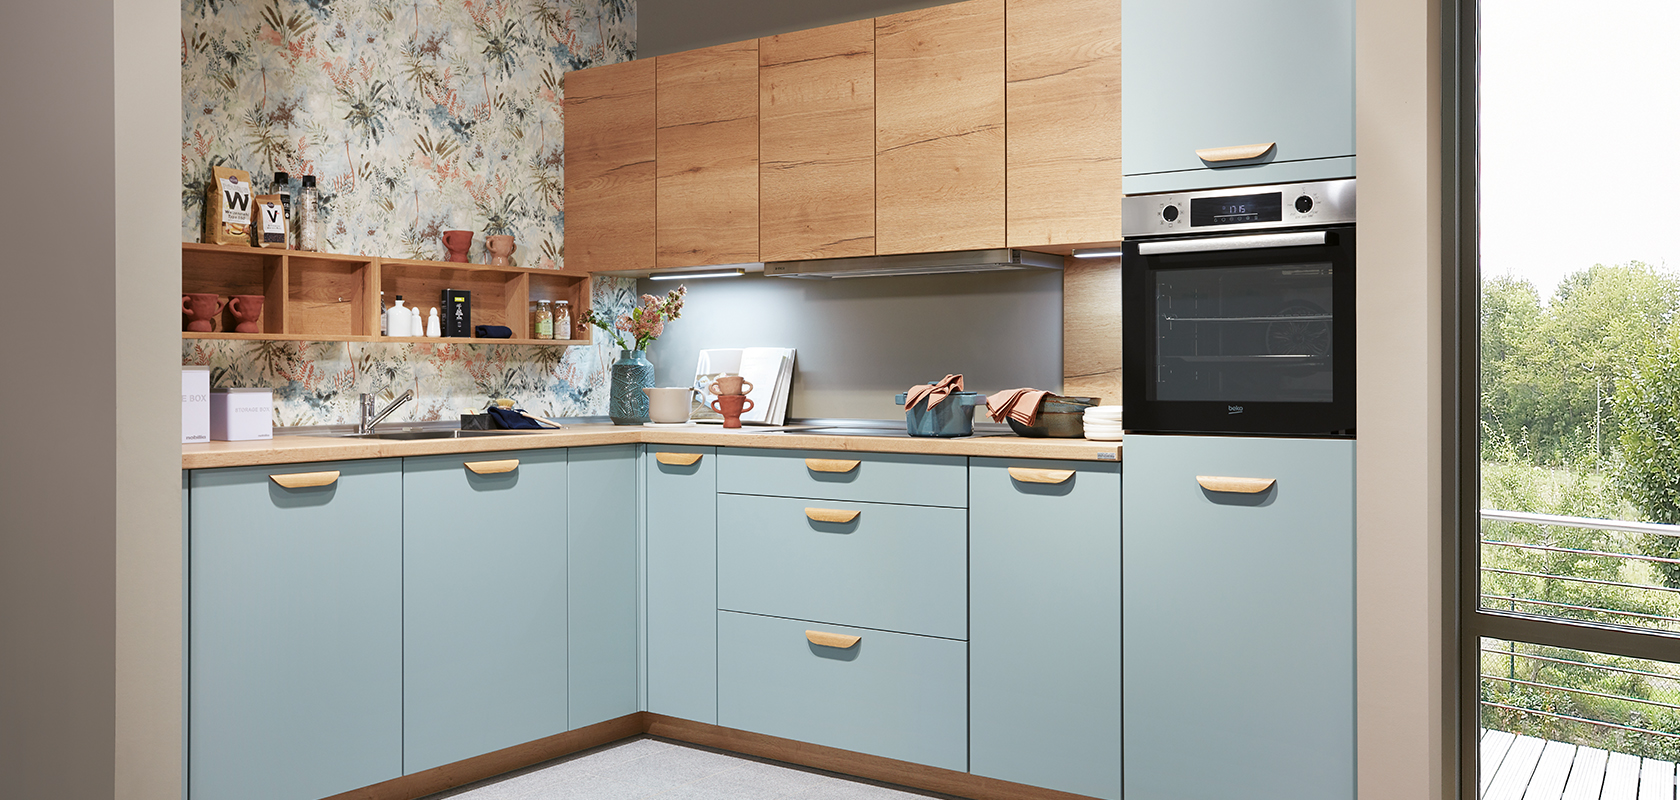 Intérieur de cuisine moderne avec des armoires bleues, des comptoirs en bois et des appareils en acier inoxydable, rehaussé d'un papier peint floral et de lumière naturelle provenant d'une fenêtre.